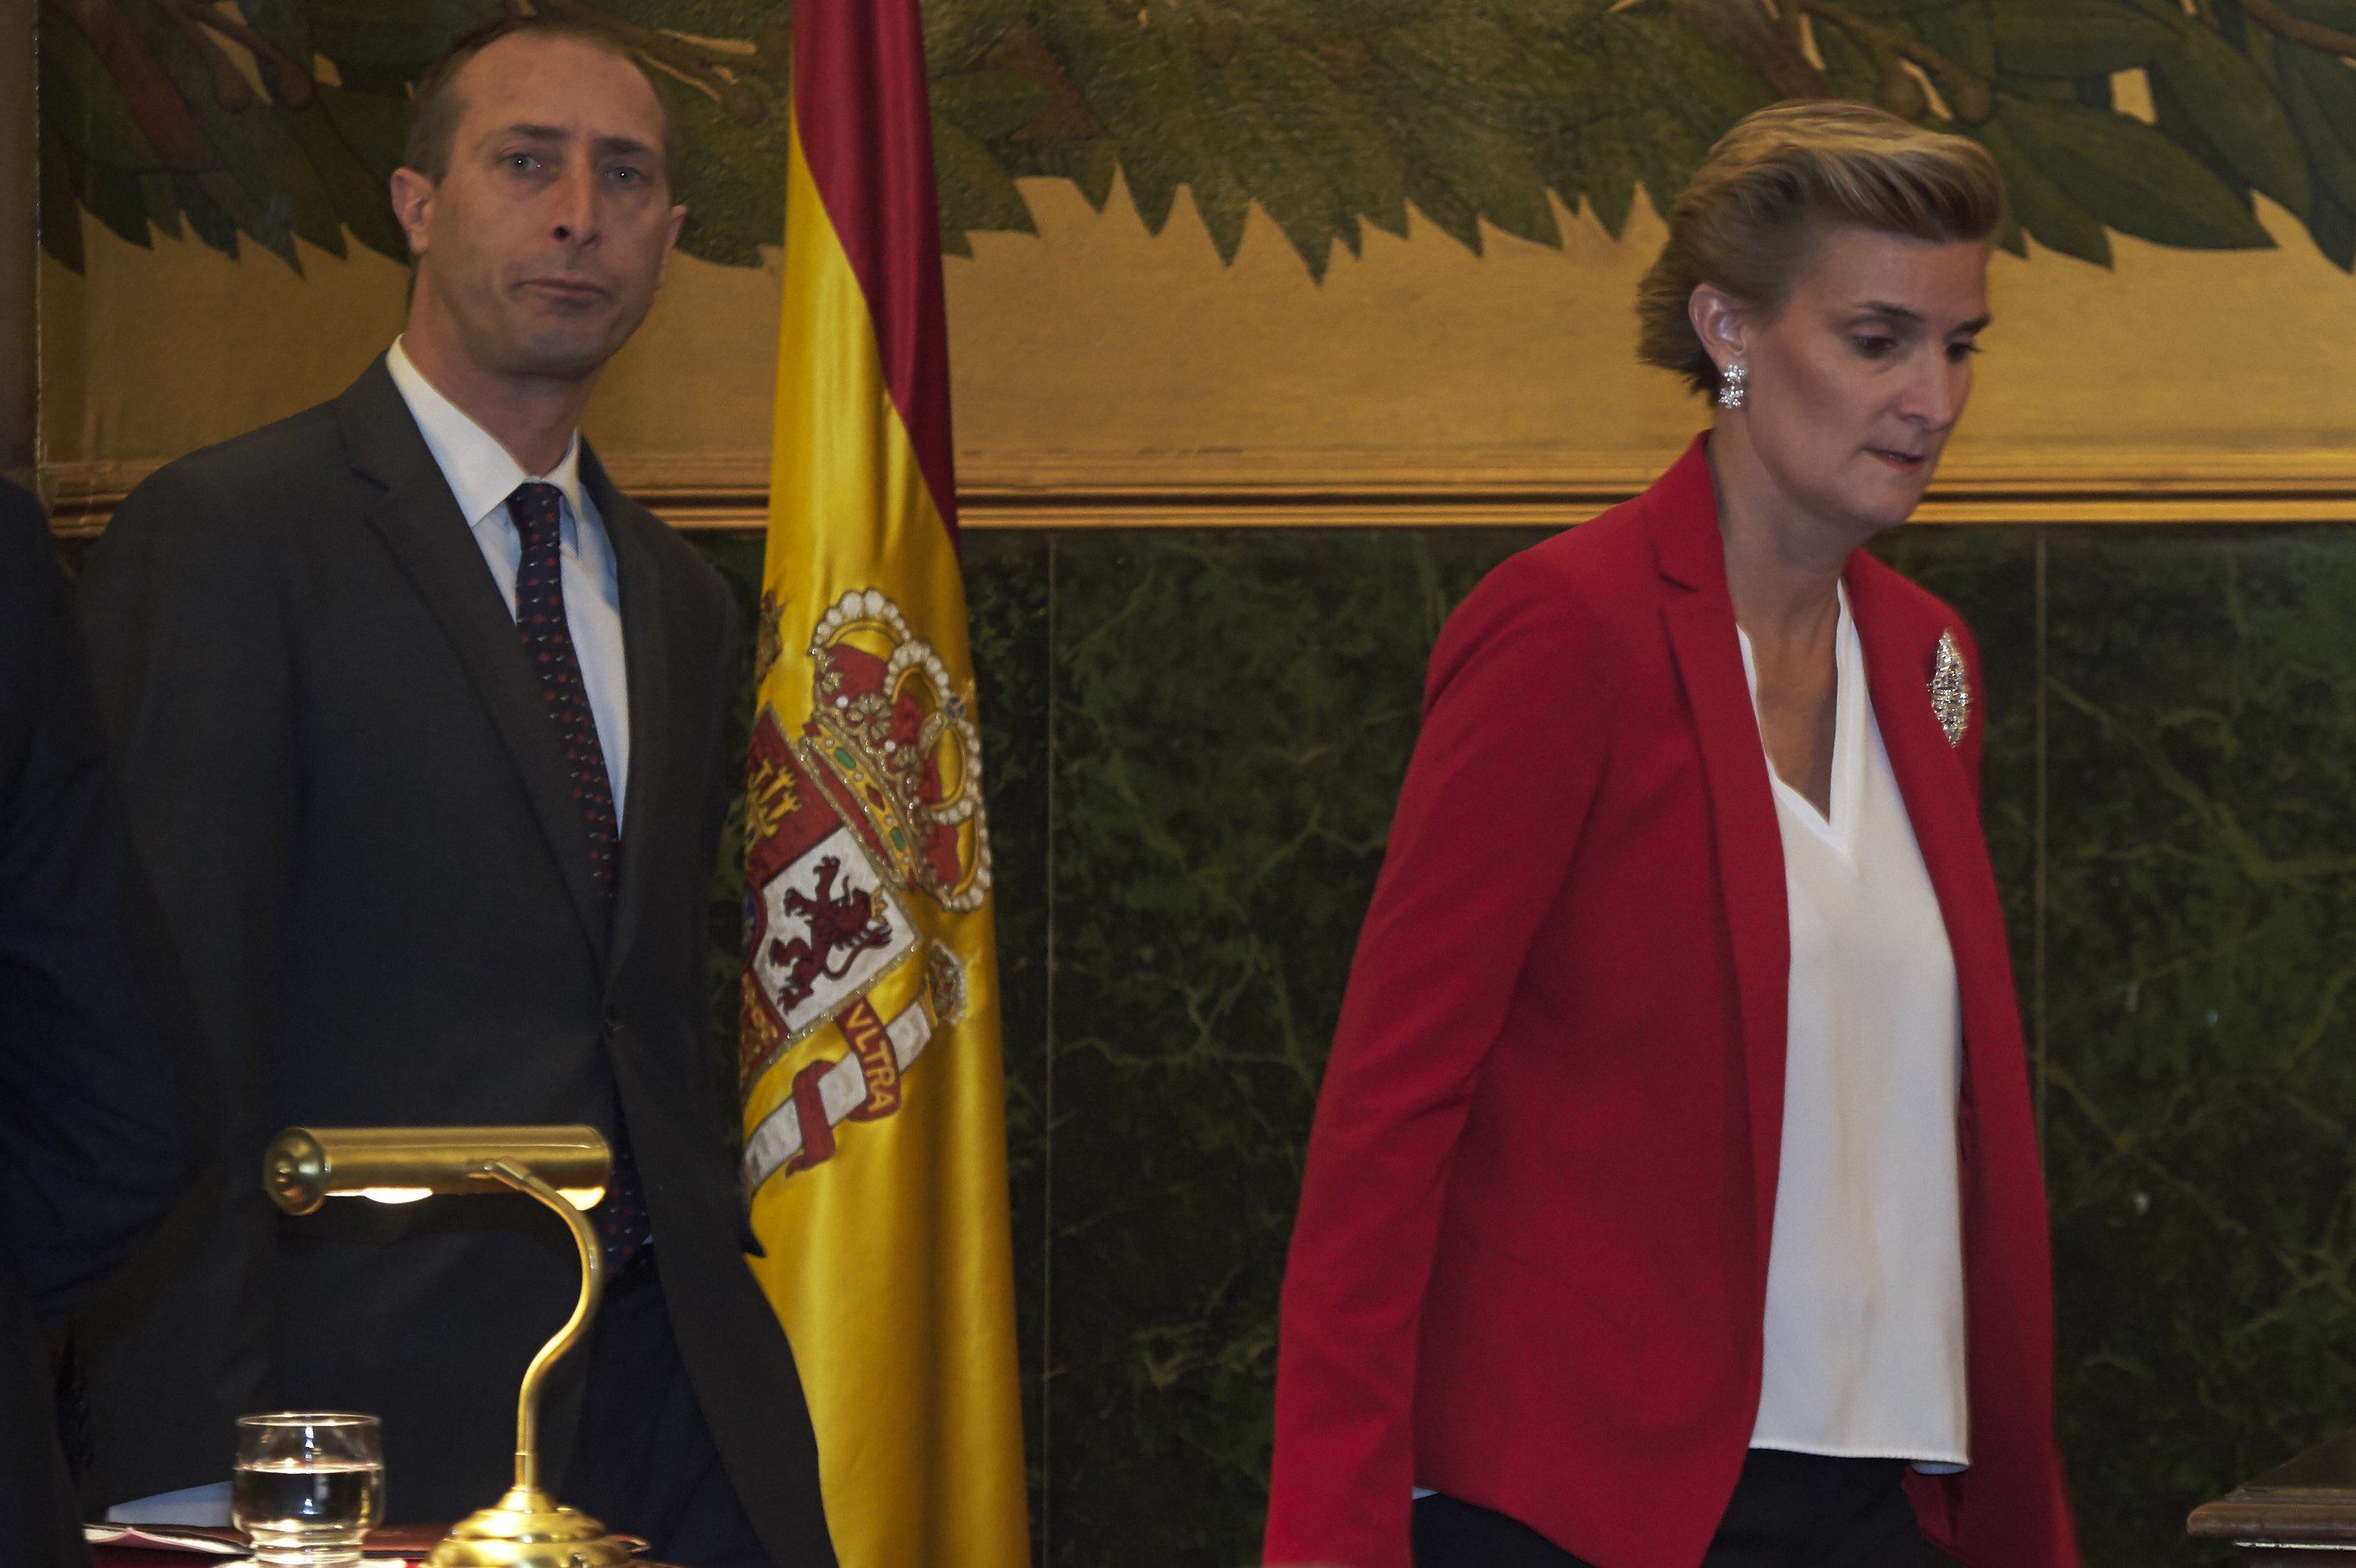 Alfonso Zurita y Maria Zurita asisten a la entrega a la Princesa Margarita de la Medalla de Oro de la Real Academia Nacional de Medicina el 8 de mayo de 2017 en Madrid, España. | Foto: Getty Images